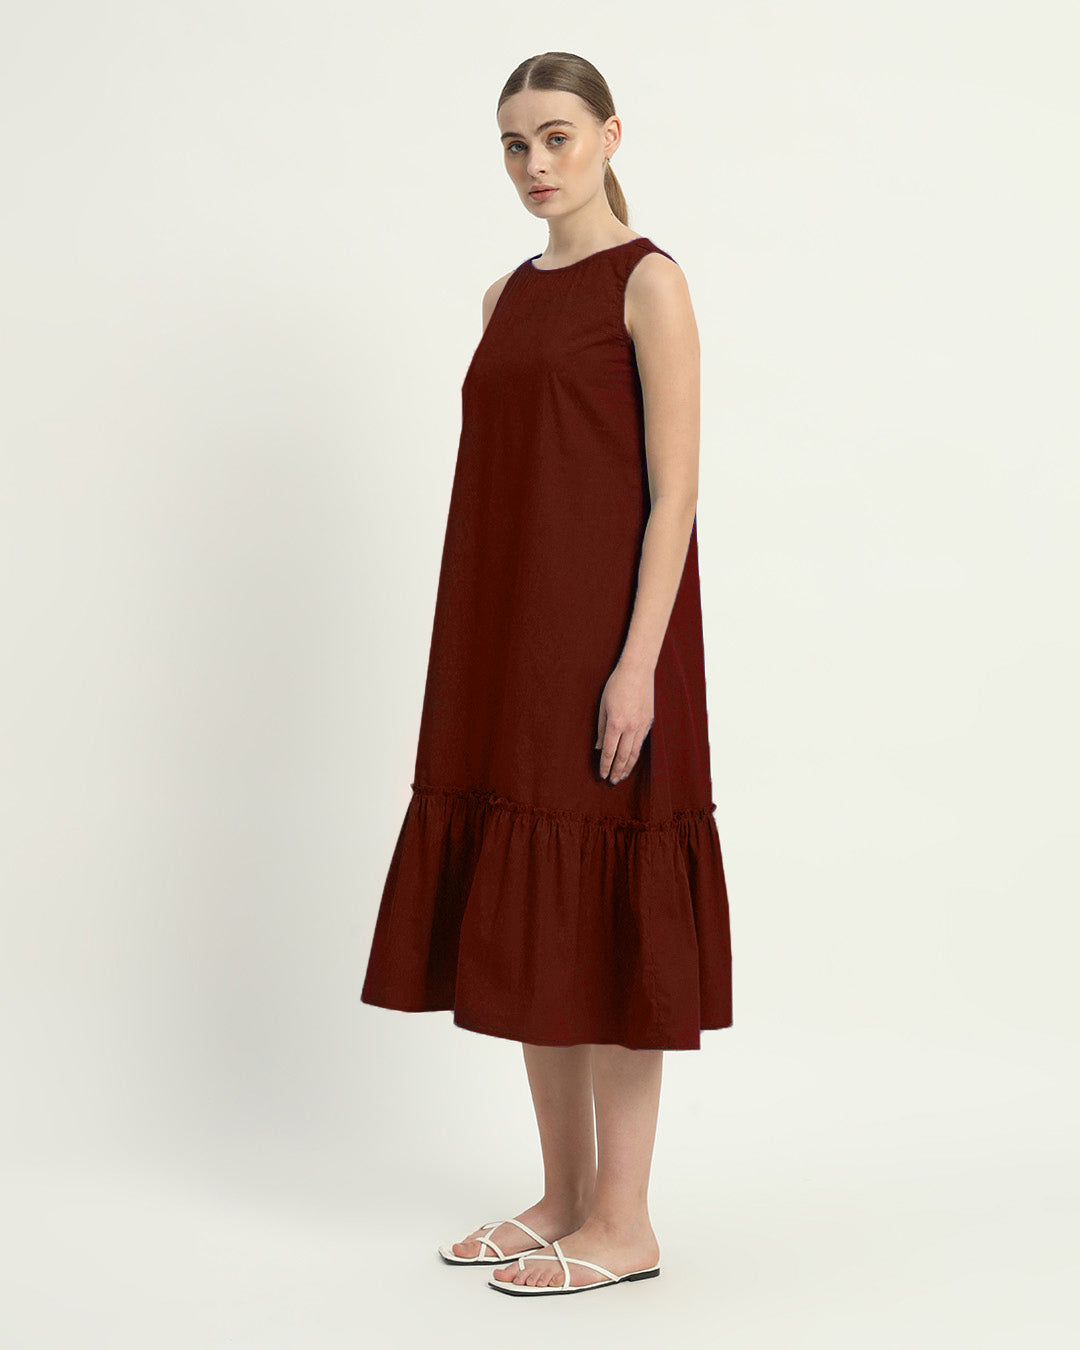 The Millis Rouge Cotton Dress